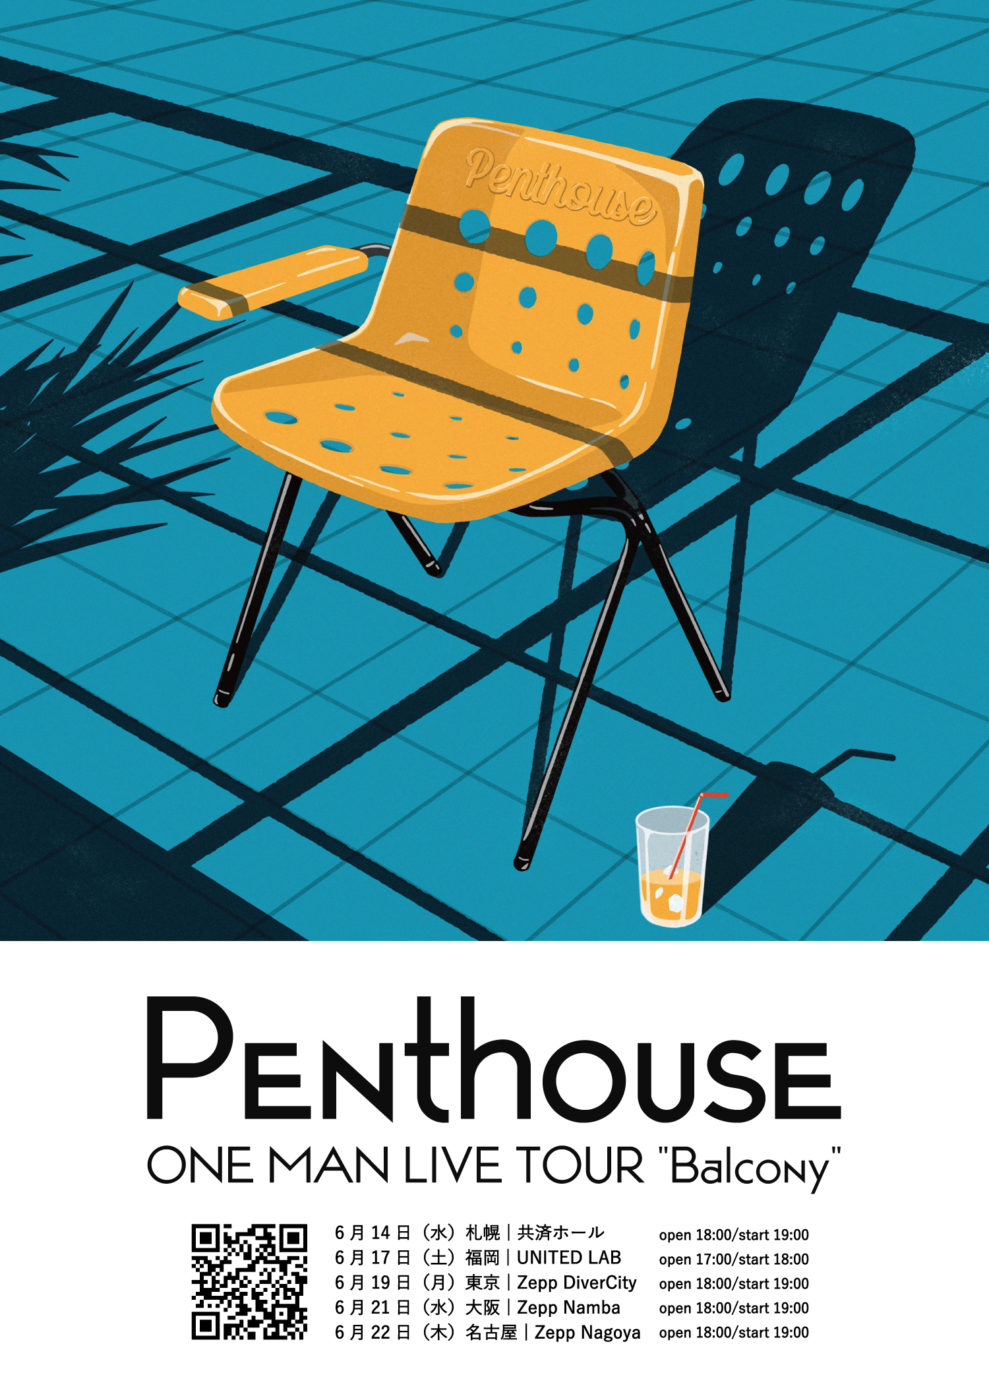 6月17日(土) Penthouse ONE MAN LIVE TOUR “Balcony” 福岡・UNITED LAB